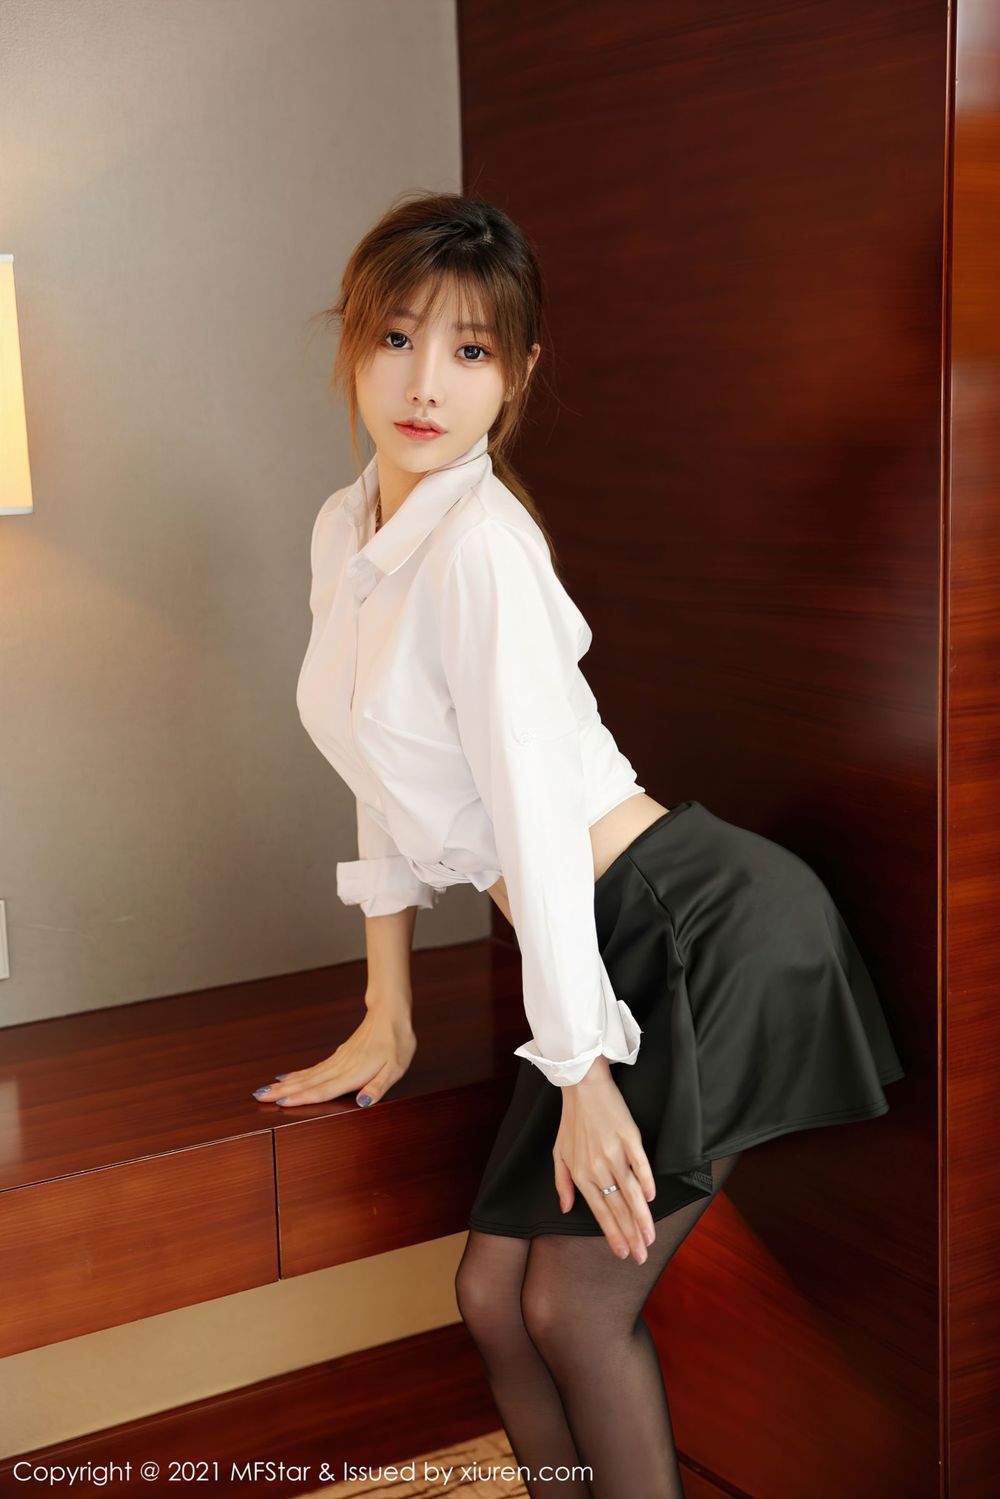 新人模特李颖煊baby - 白衬衫+黑丝系列写真